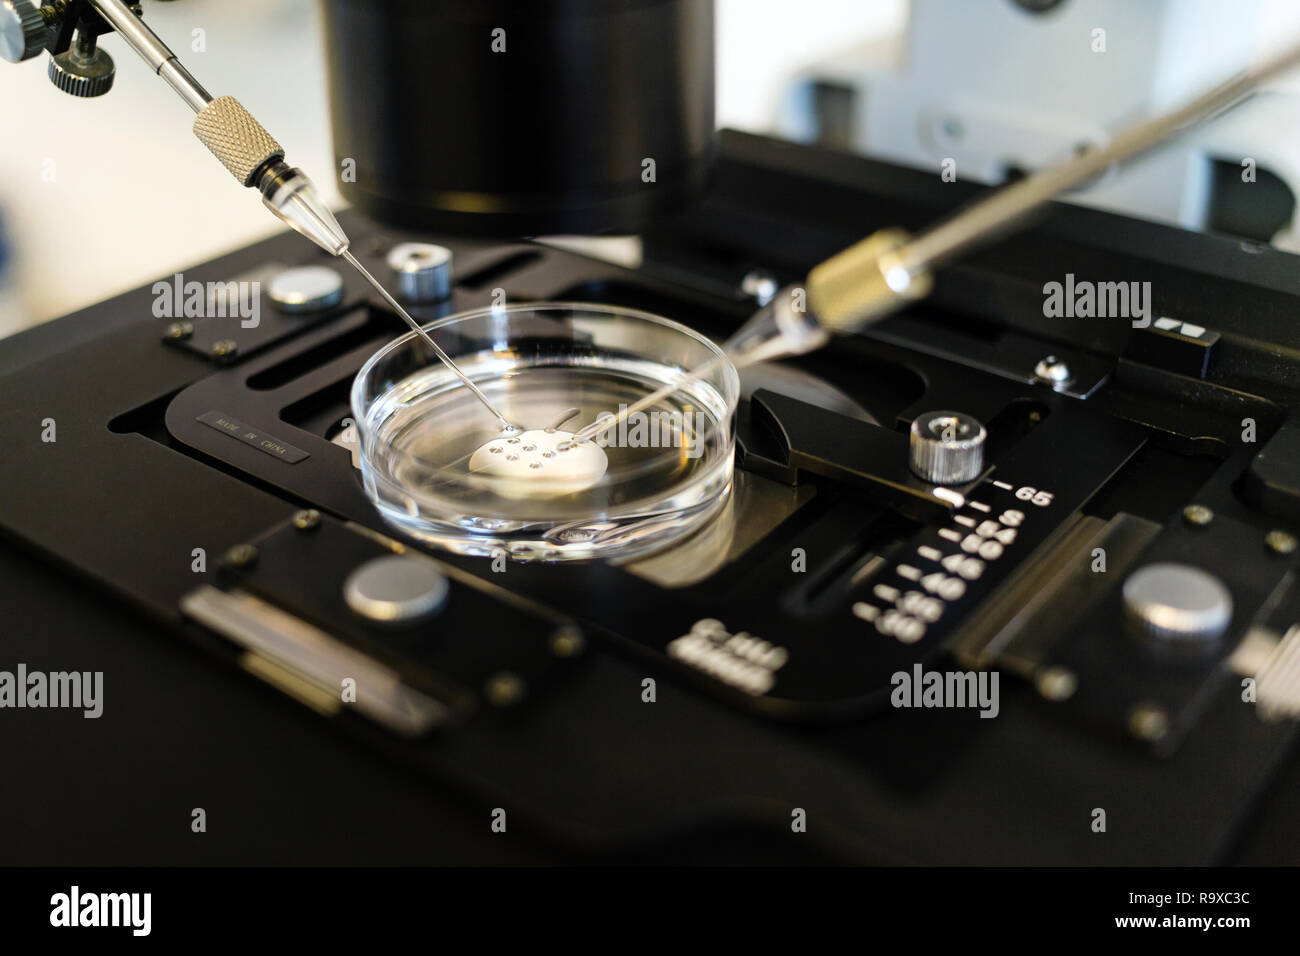 22.02.2018, Berlin, Deutschland - kuenstliche Befruchtung / der ICSI-Methode (intrazytoplasmatische Injektion Spermien) unter dem Mikroskop. Das Sp Stockfoto